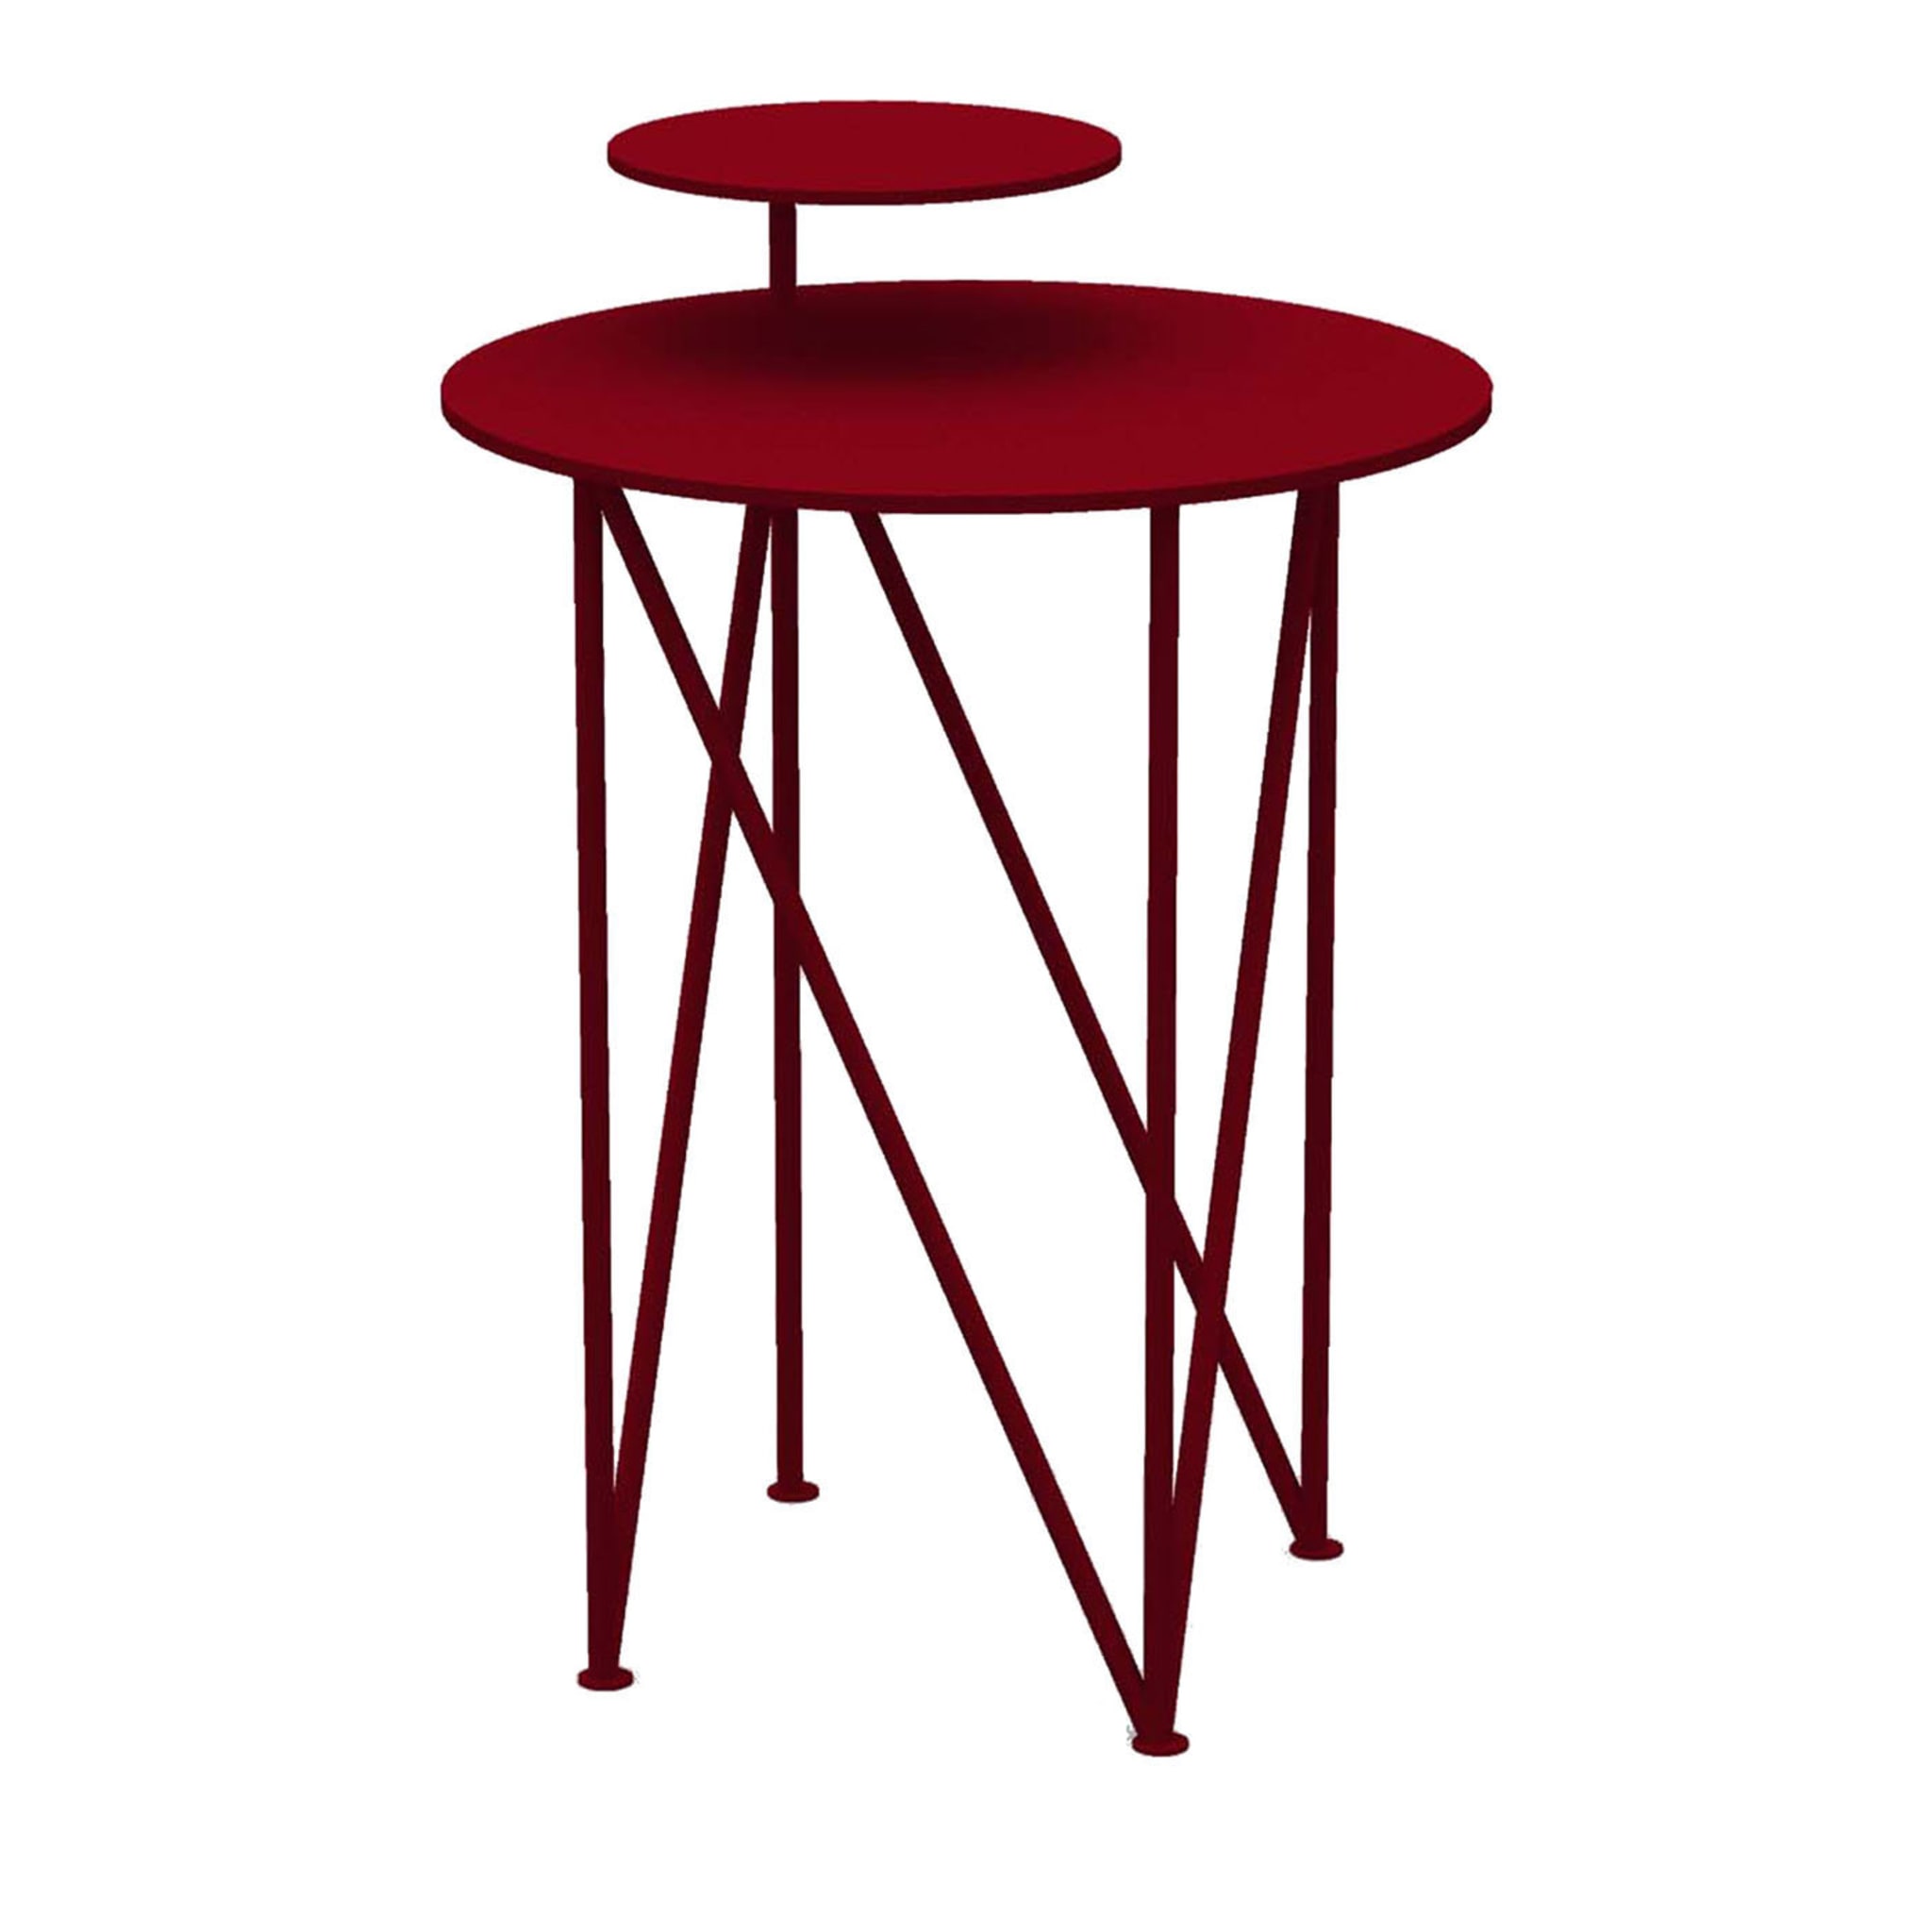 Table basse Segmenti rouge rubis - Vue alternative 1